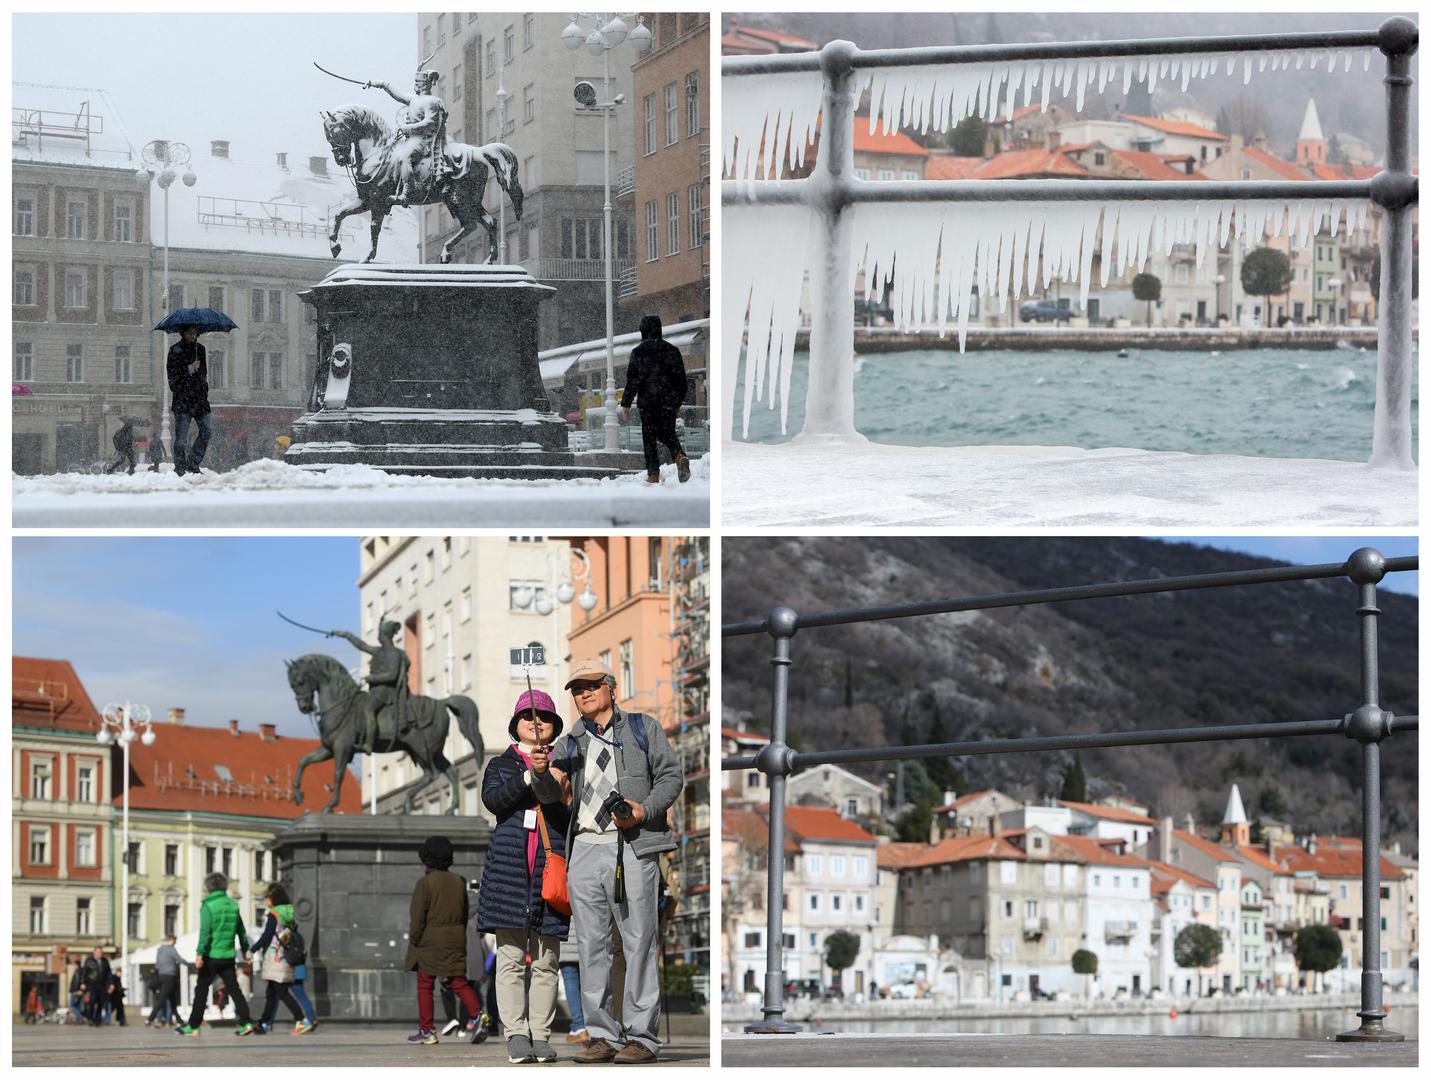 Nakon što su u cijeloj Hrvatskoj temperature zraka bile vrlo niske i snijeg je padao gotovo u svim krajevima, samo nekoliko dana kasnije izgled krajolika u potpunosti se promijenio.